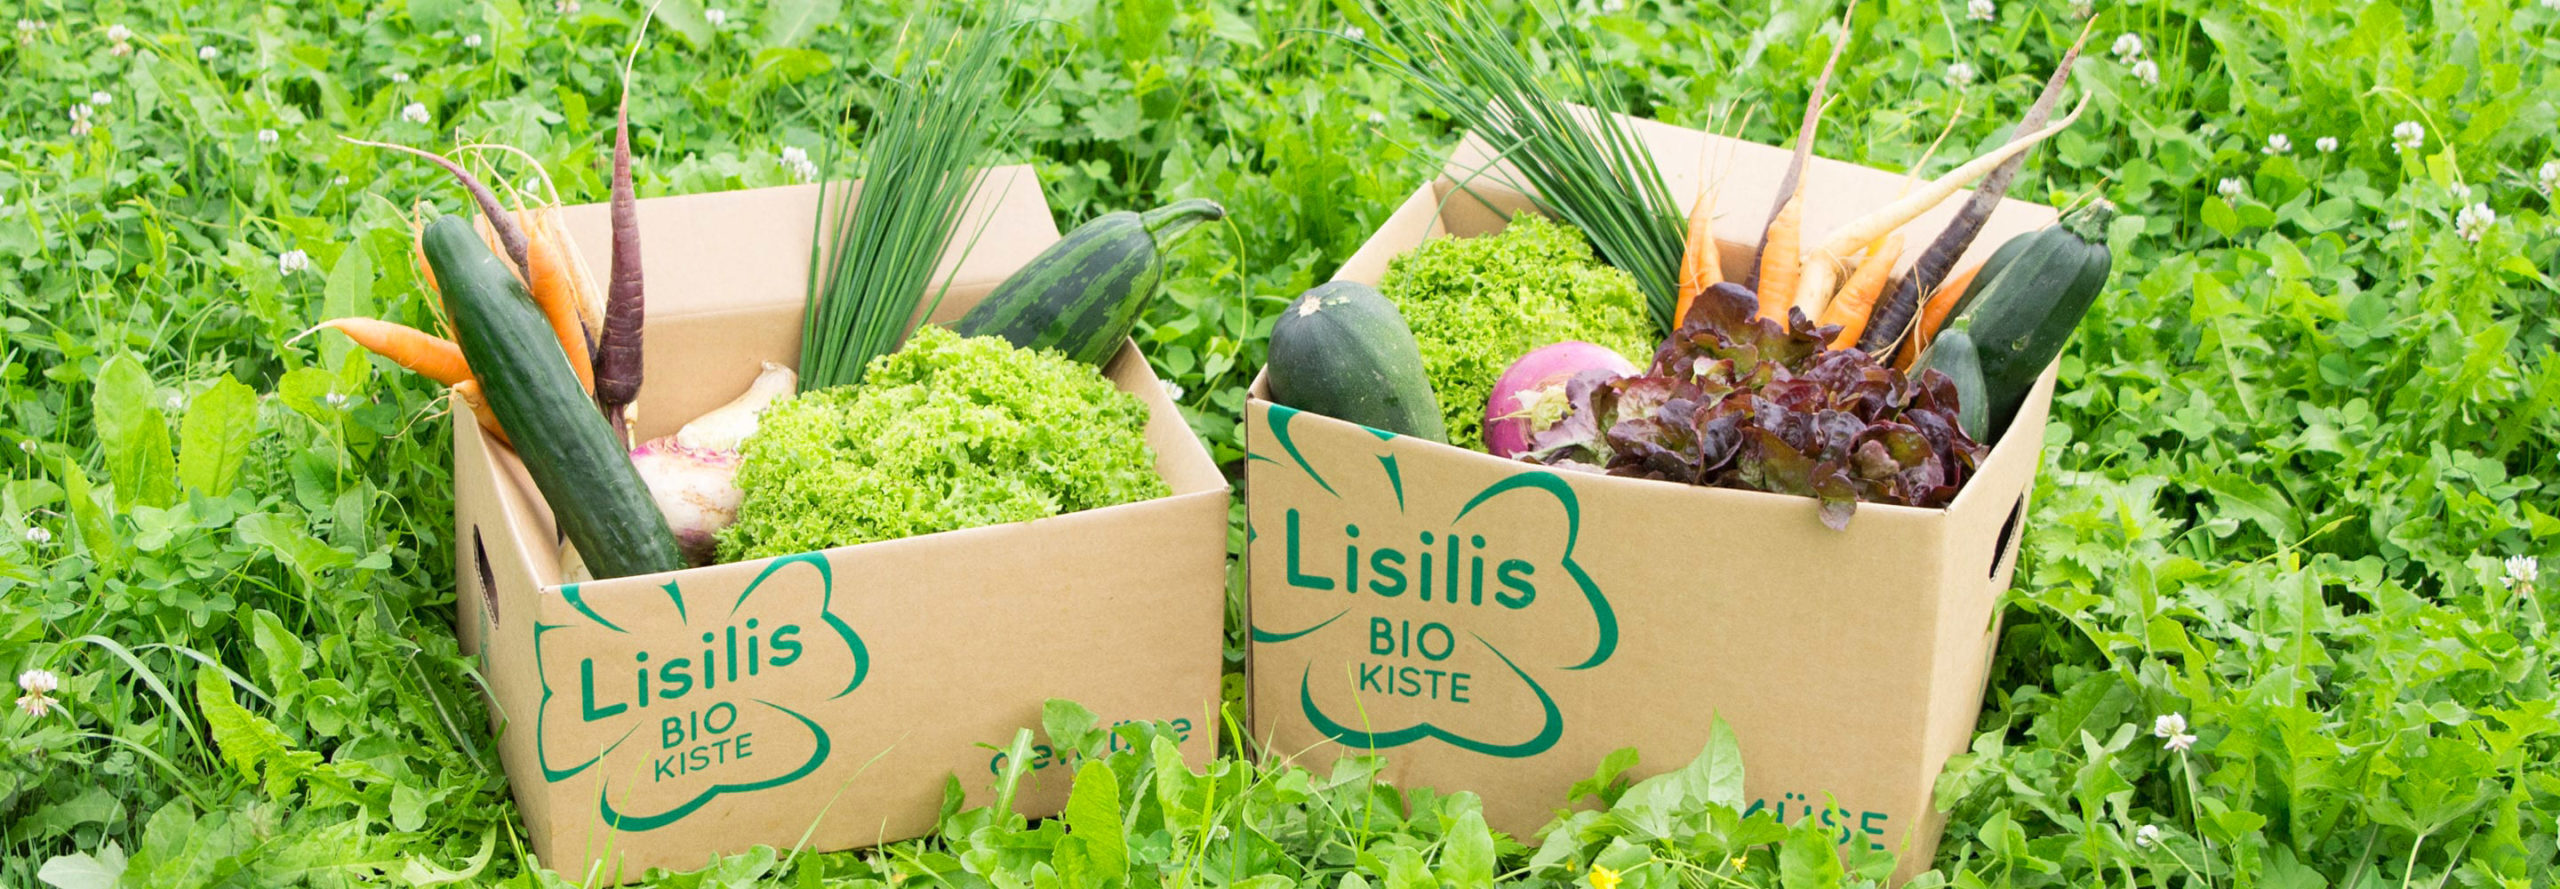 Lisilis Bio-Kiste